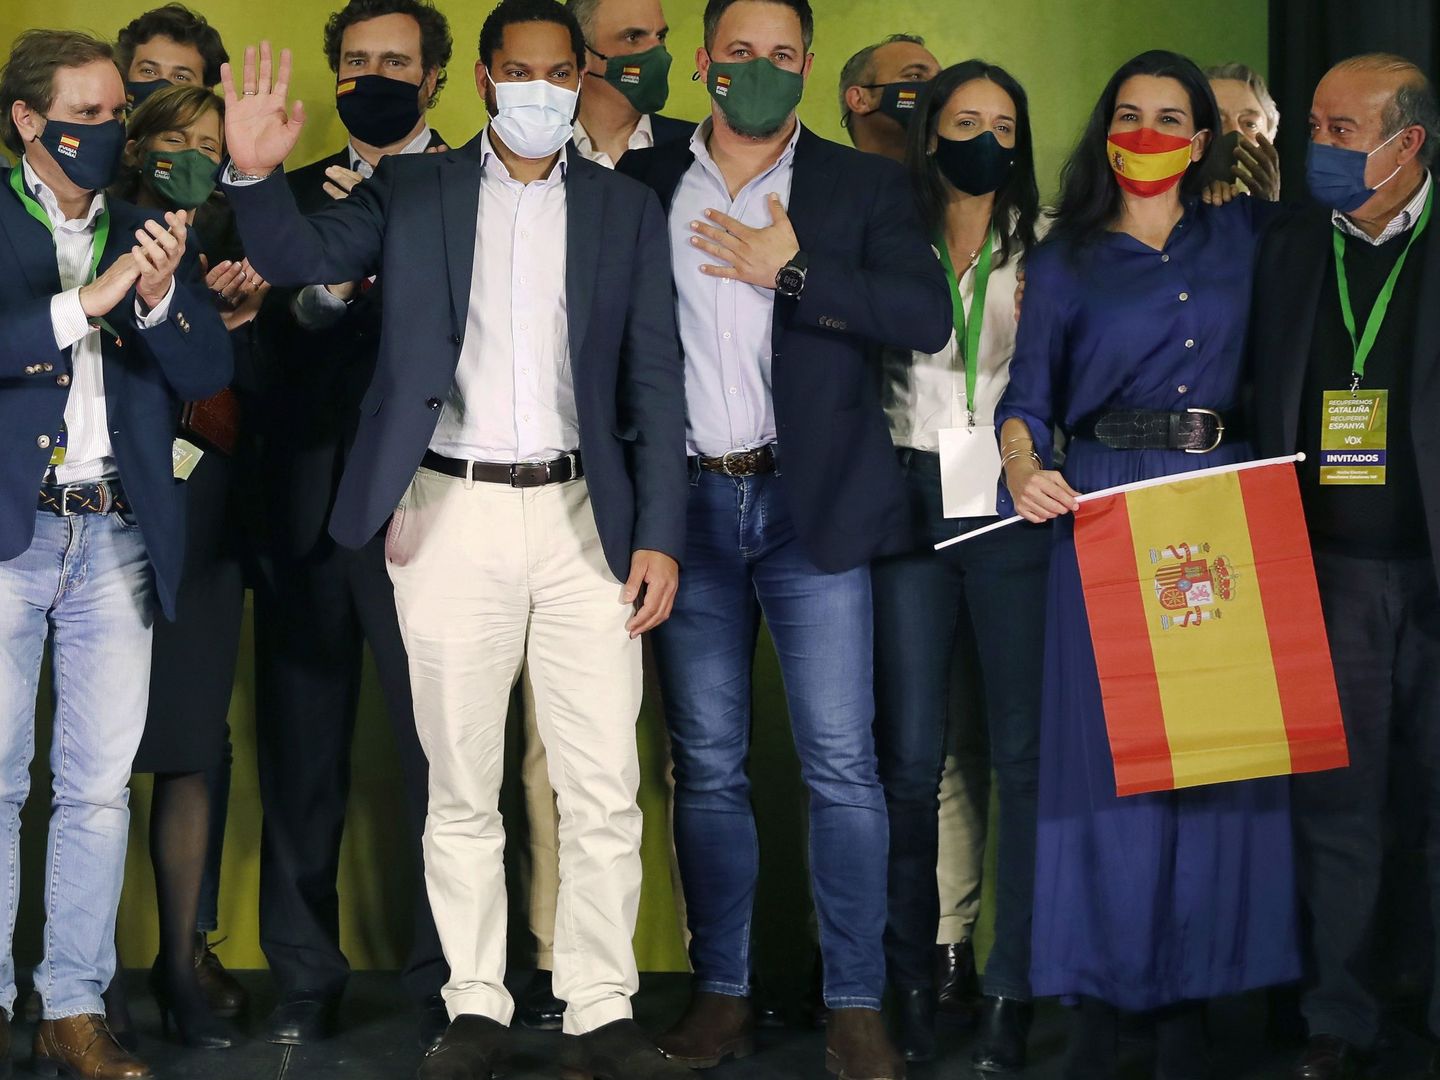 El cabeza de lista de Vox, Ignacio Garriga, acompañado de los miembros de su partido tras el 14-F. (EFE)